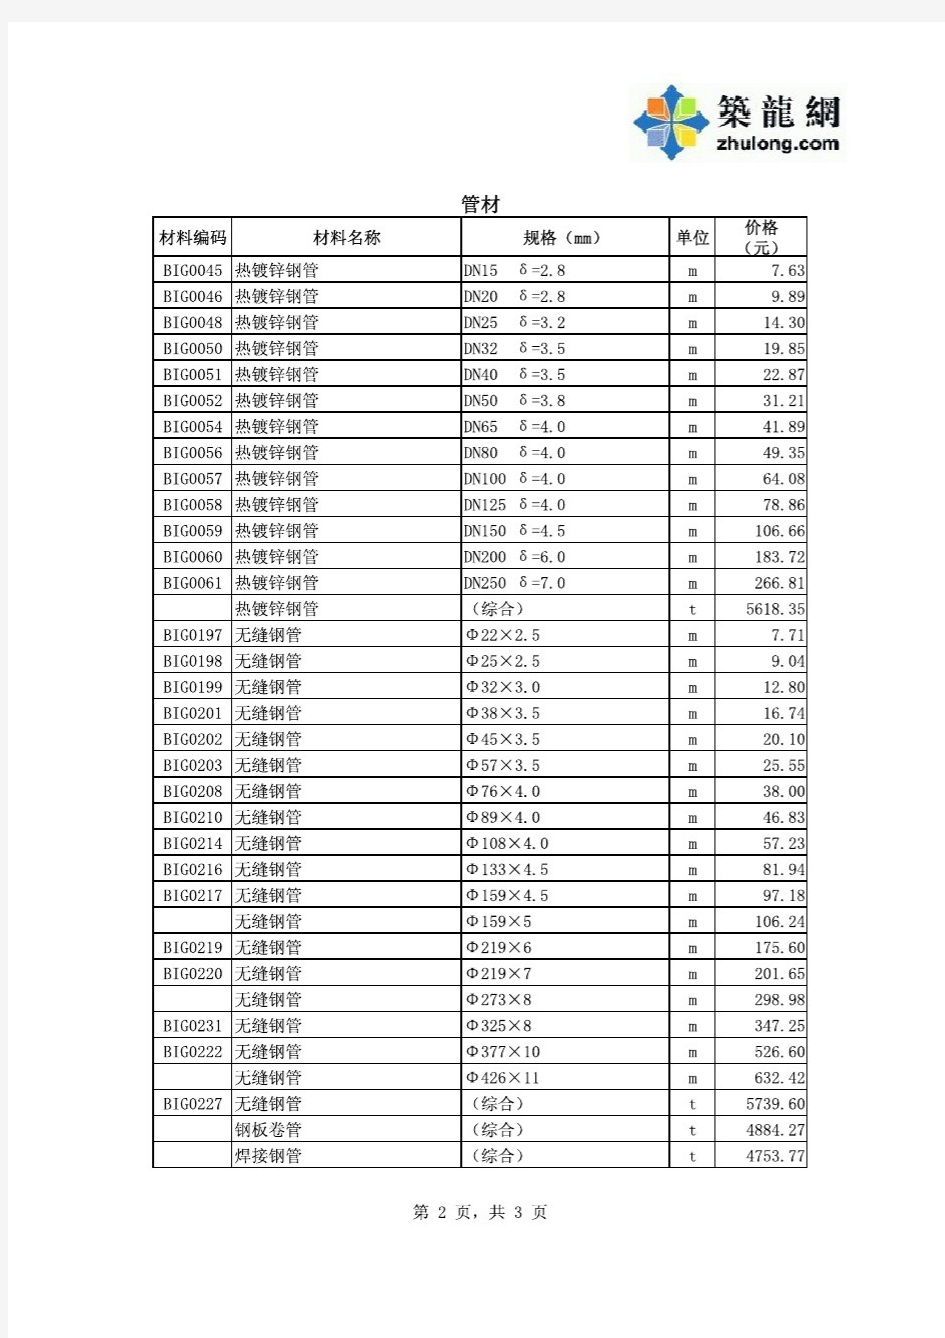 2013年深圳建设工程价格信息第09期部分材料参考价格